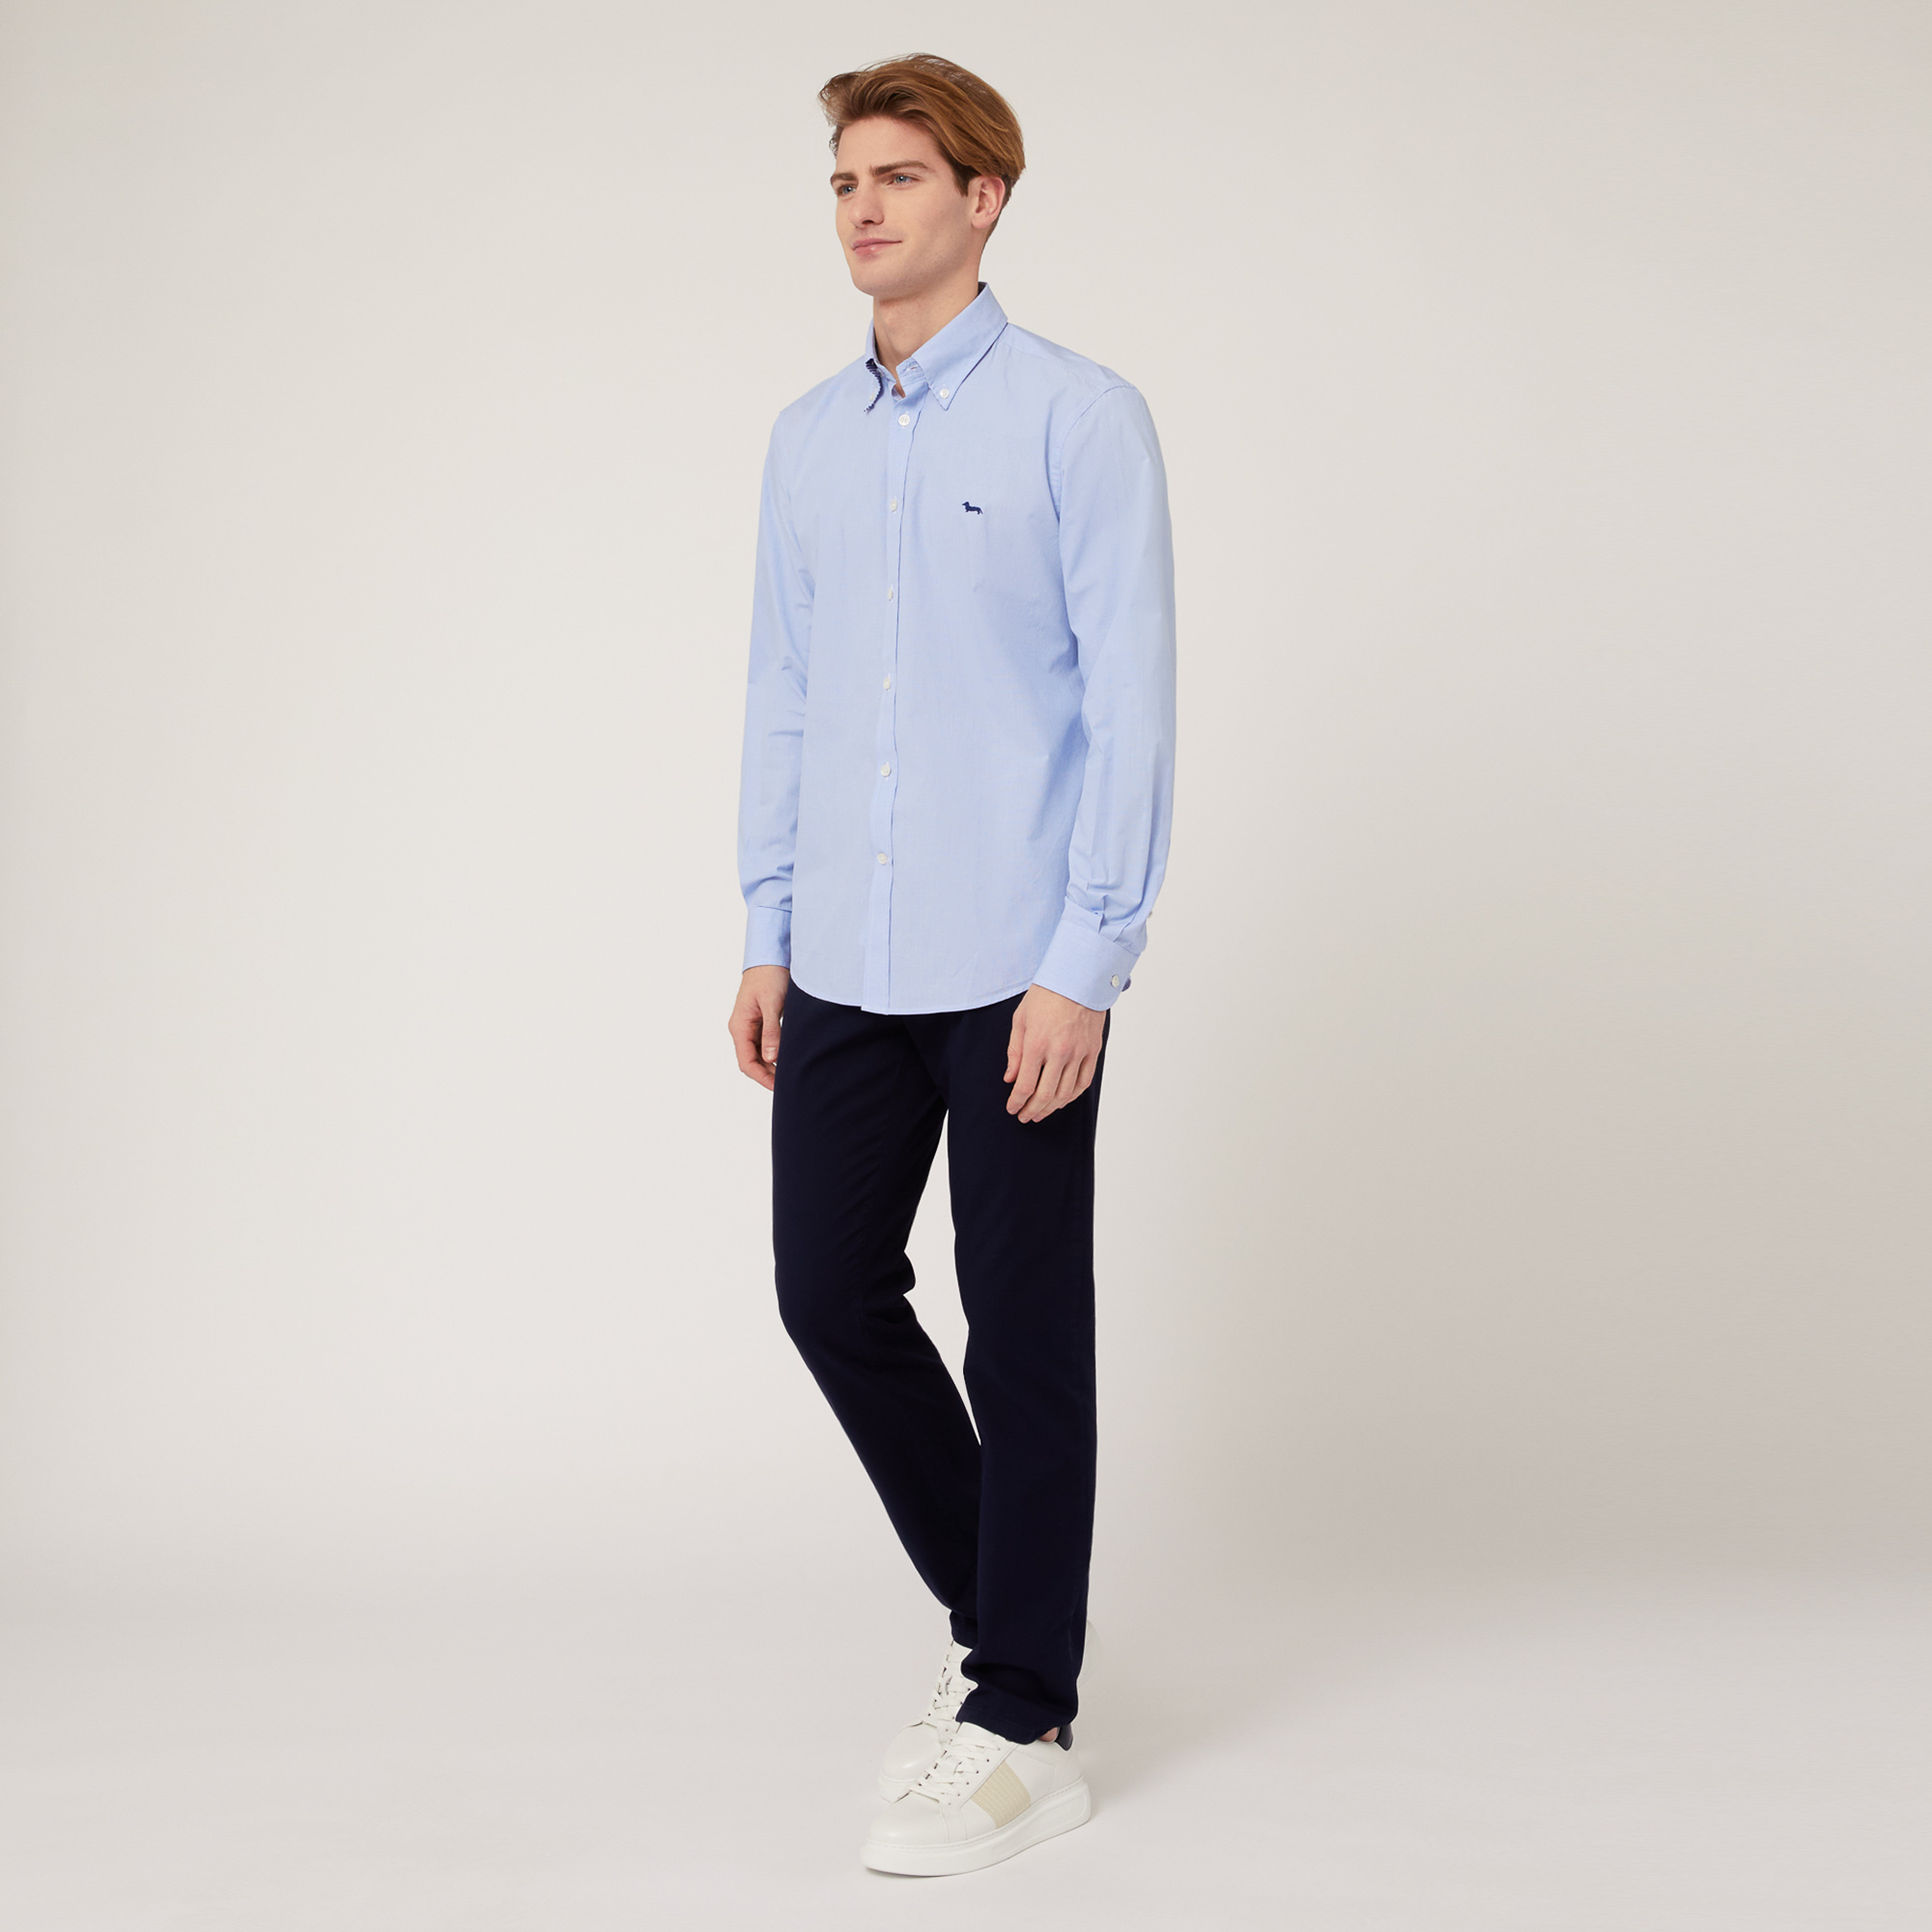 Regular Fit Cotton Shirt, Sky Blue, large image number 3